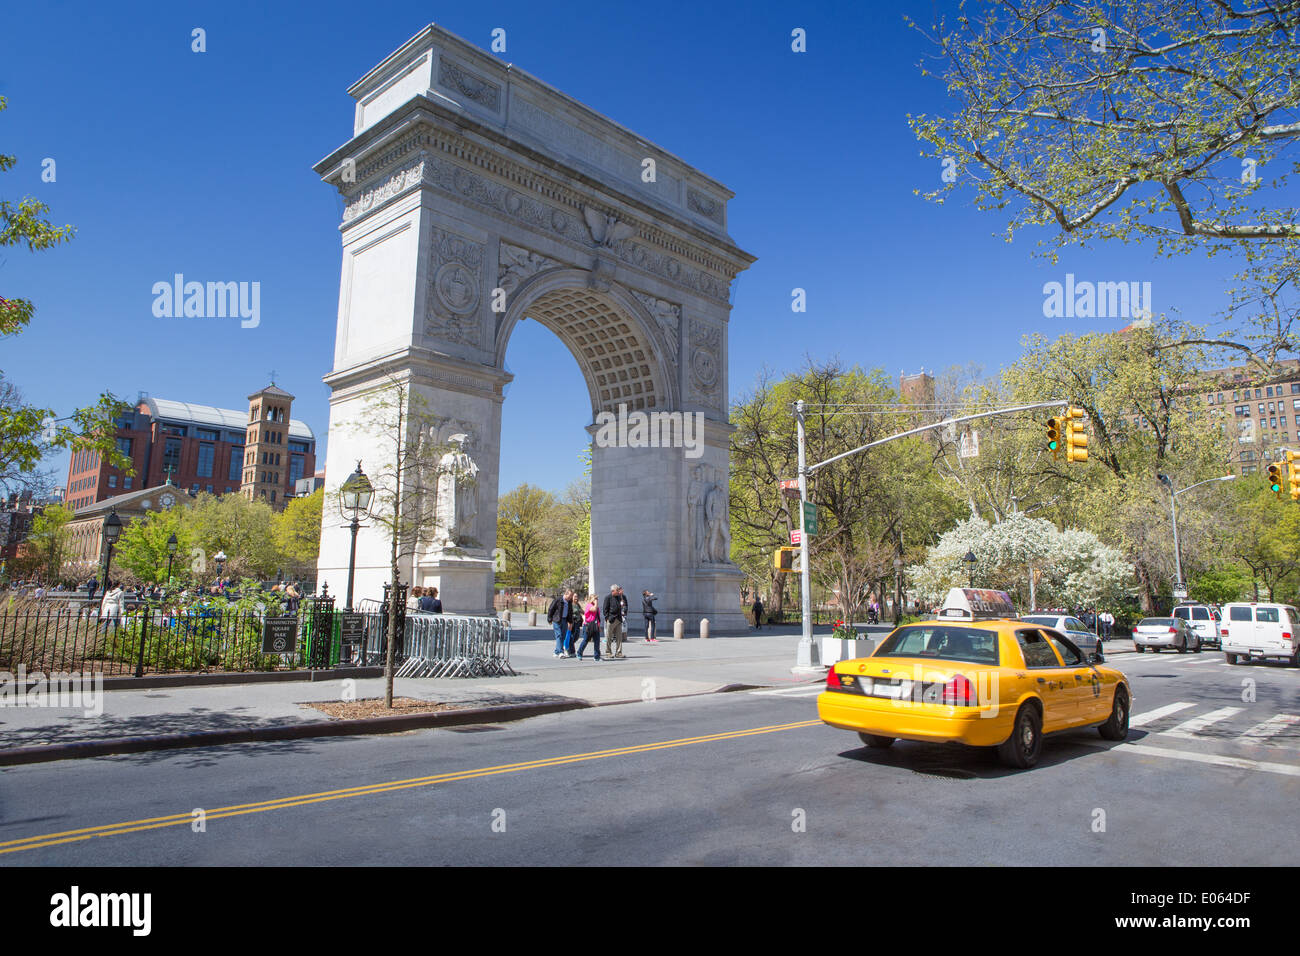 Washington Arch dans le Washington Square Park, New York, NY, USA Banque D'Images